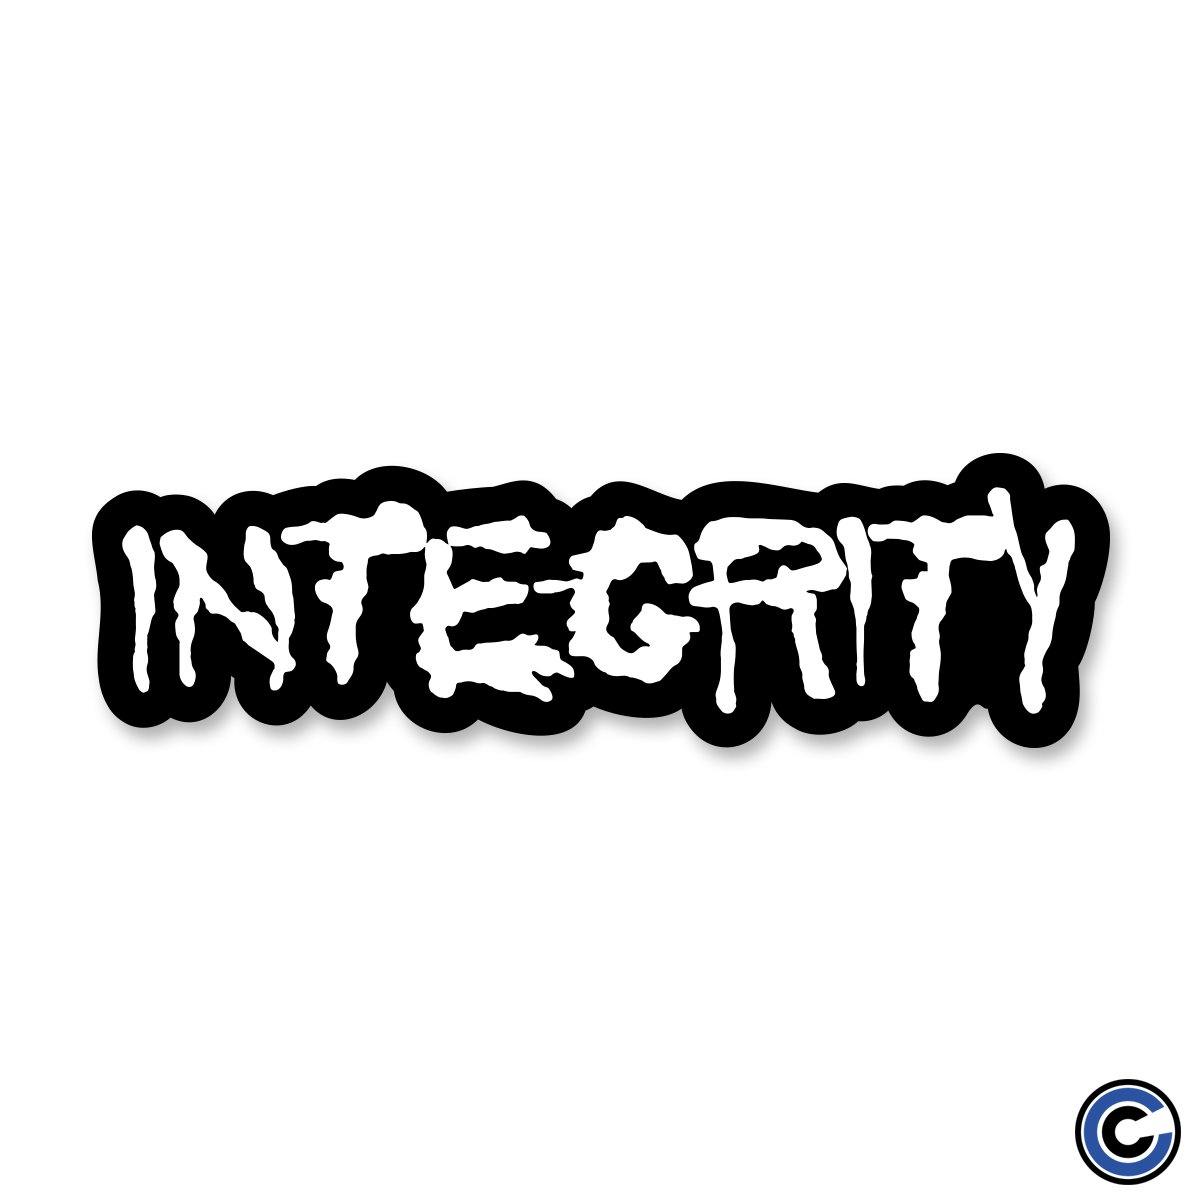 Buy – Integrity "Splatter Logo" Sticker – Band & Music Merch – Cold Cuts Merch